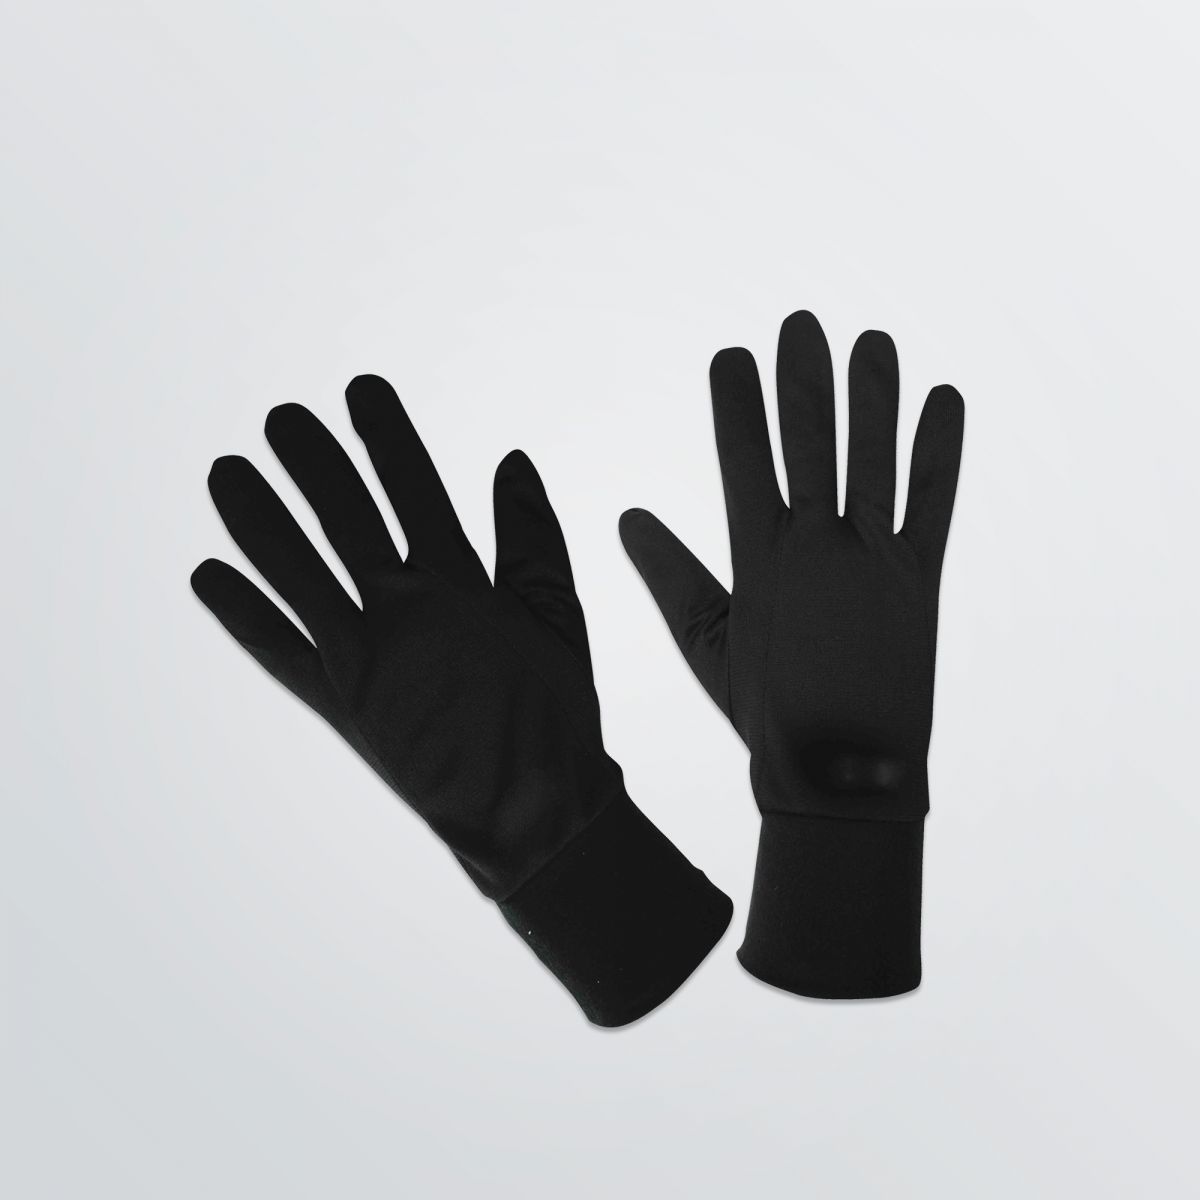 Sporthandschuhe zum Bedrucken in schwarzer Beispielfarbe aus leichtem und atmungsaktivem Polyester